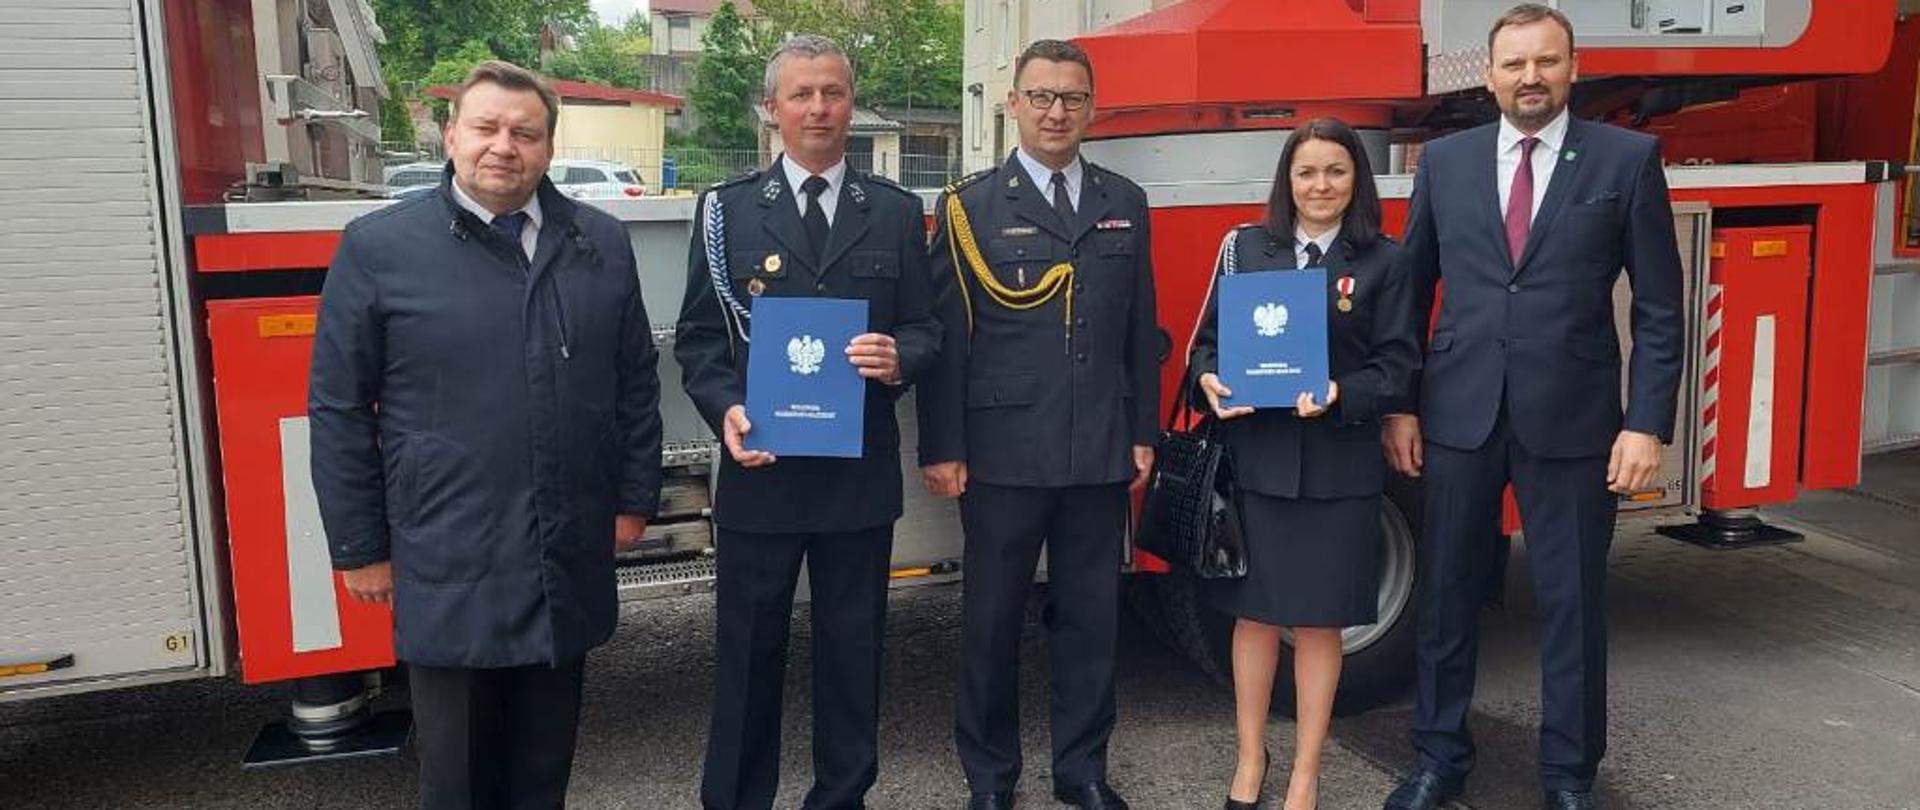 Ostródzki Komendant Powiatowy PSP, Wójt Gminy Grunwald, Zastępca Wójta Gminy Ostróda oraz Prezesi OSP Gierzwałd i OSP Durąg prezentują wręczone promesy.